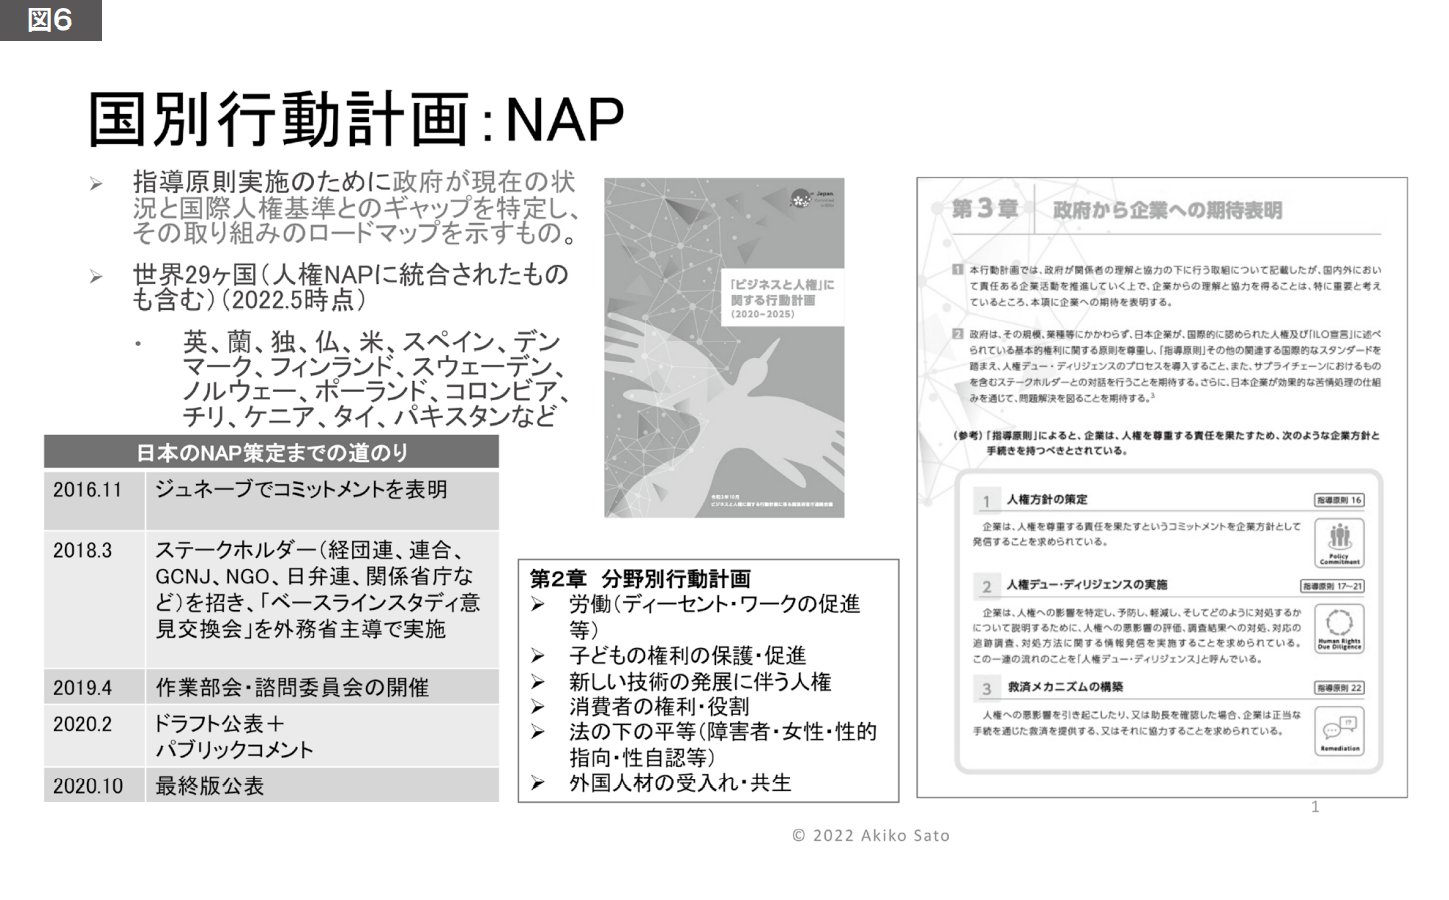 図6 国別行動計画:NAP